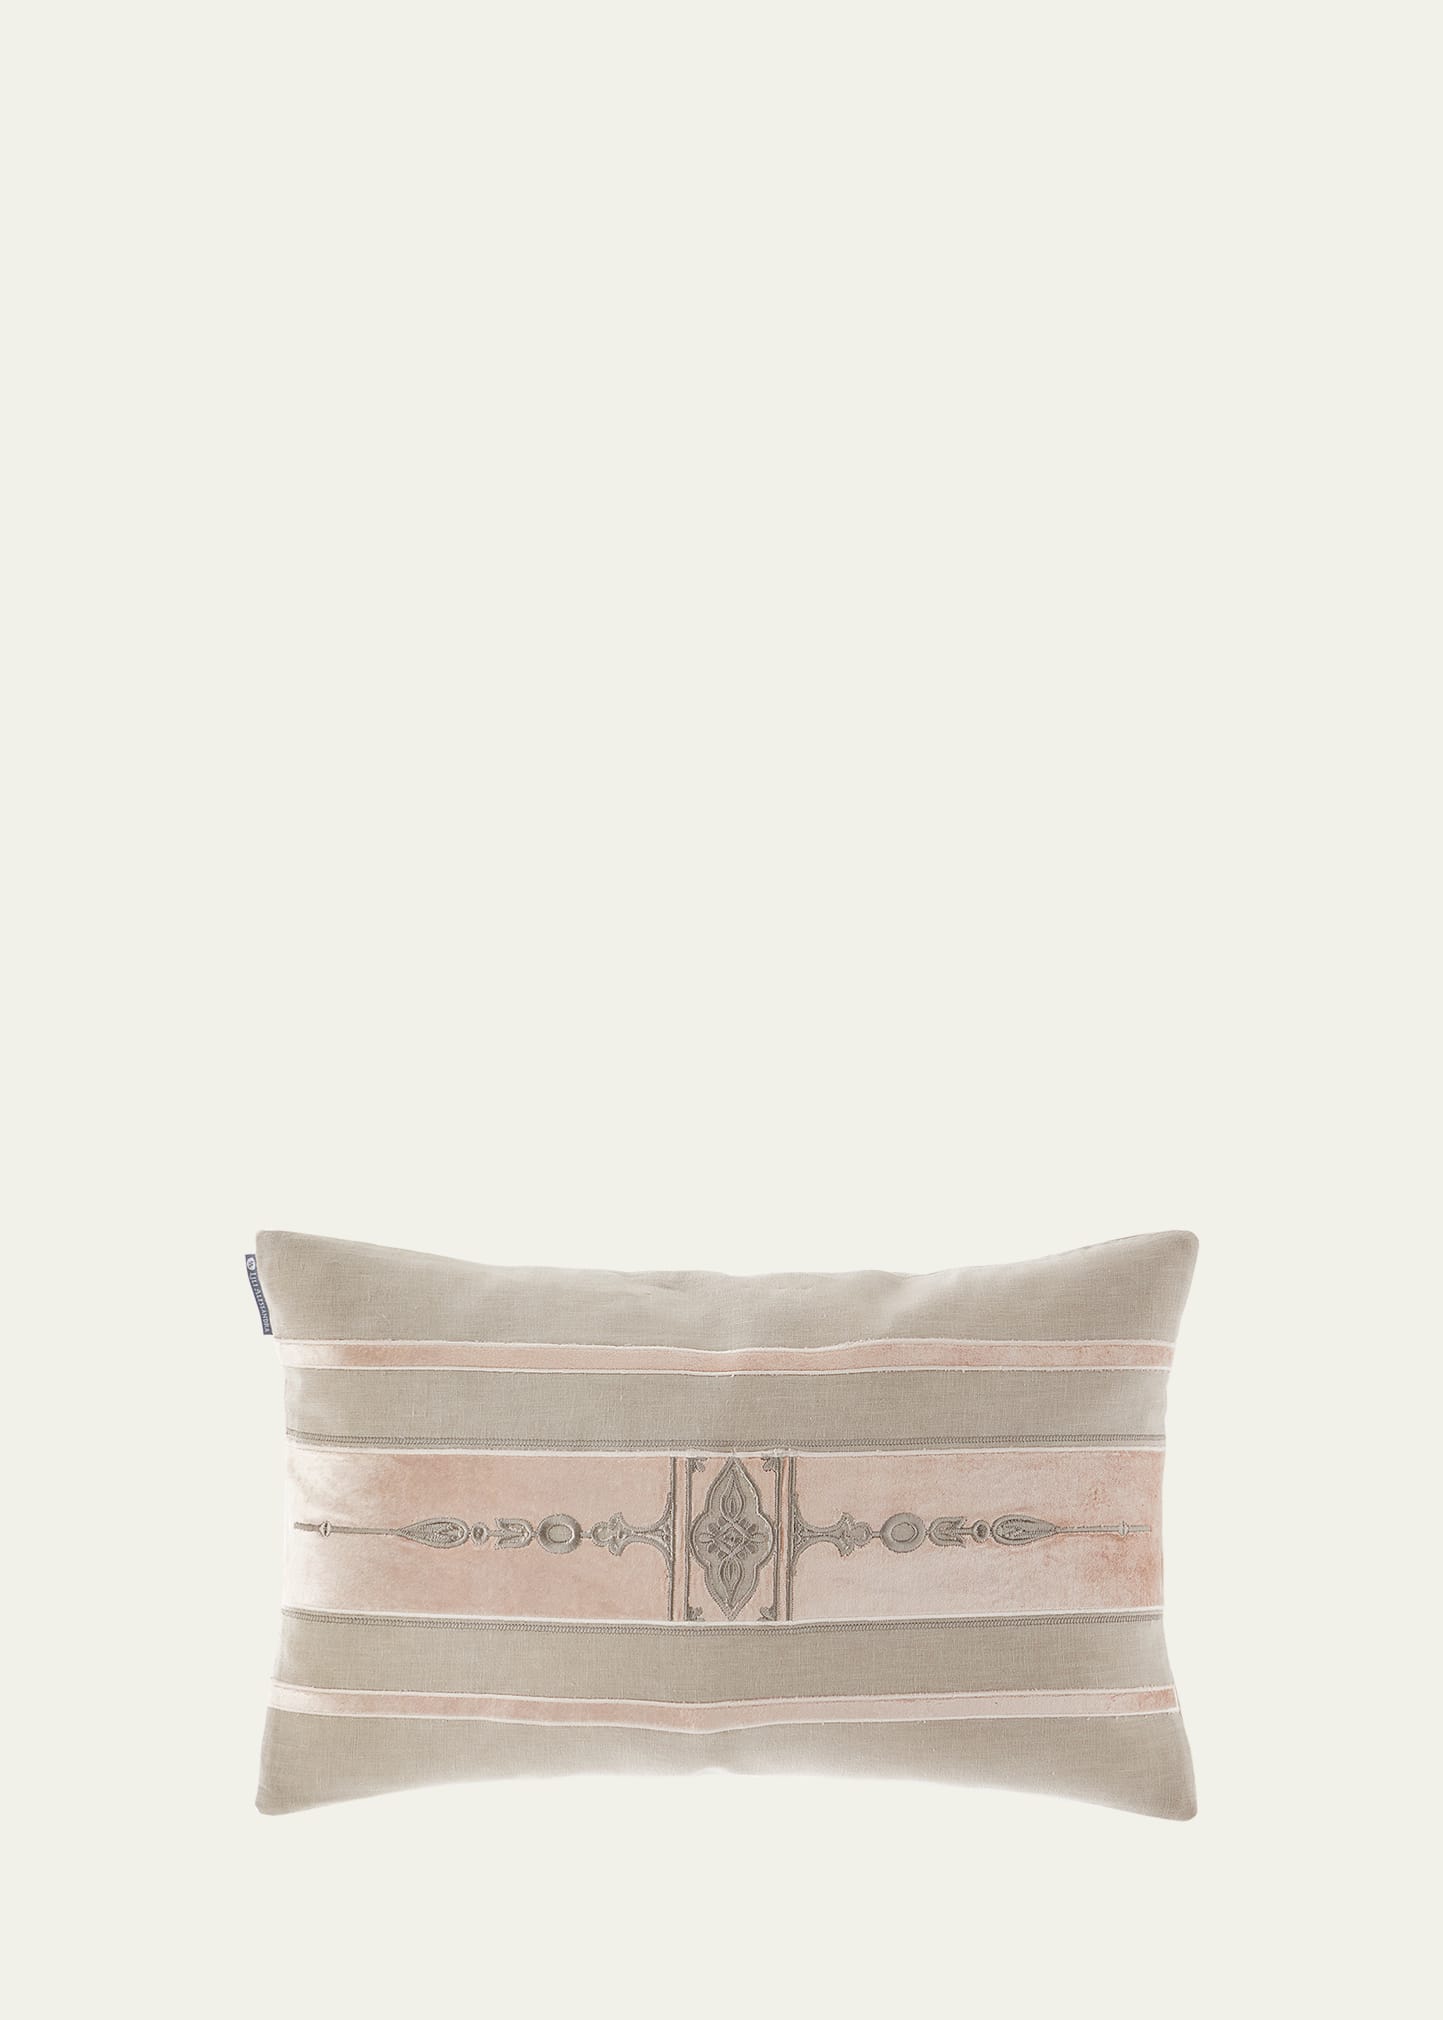 Lili Alessandra Cairo Decorative Pillow, 14" X 22" In Naturalsalmon